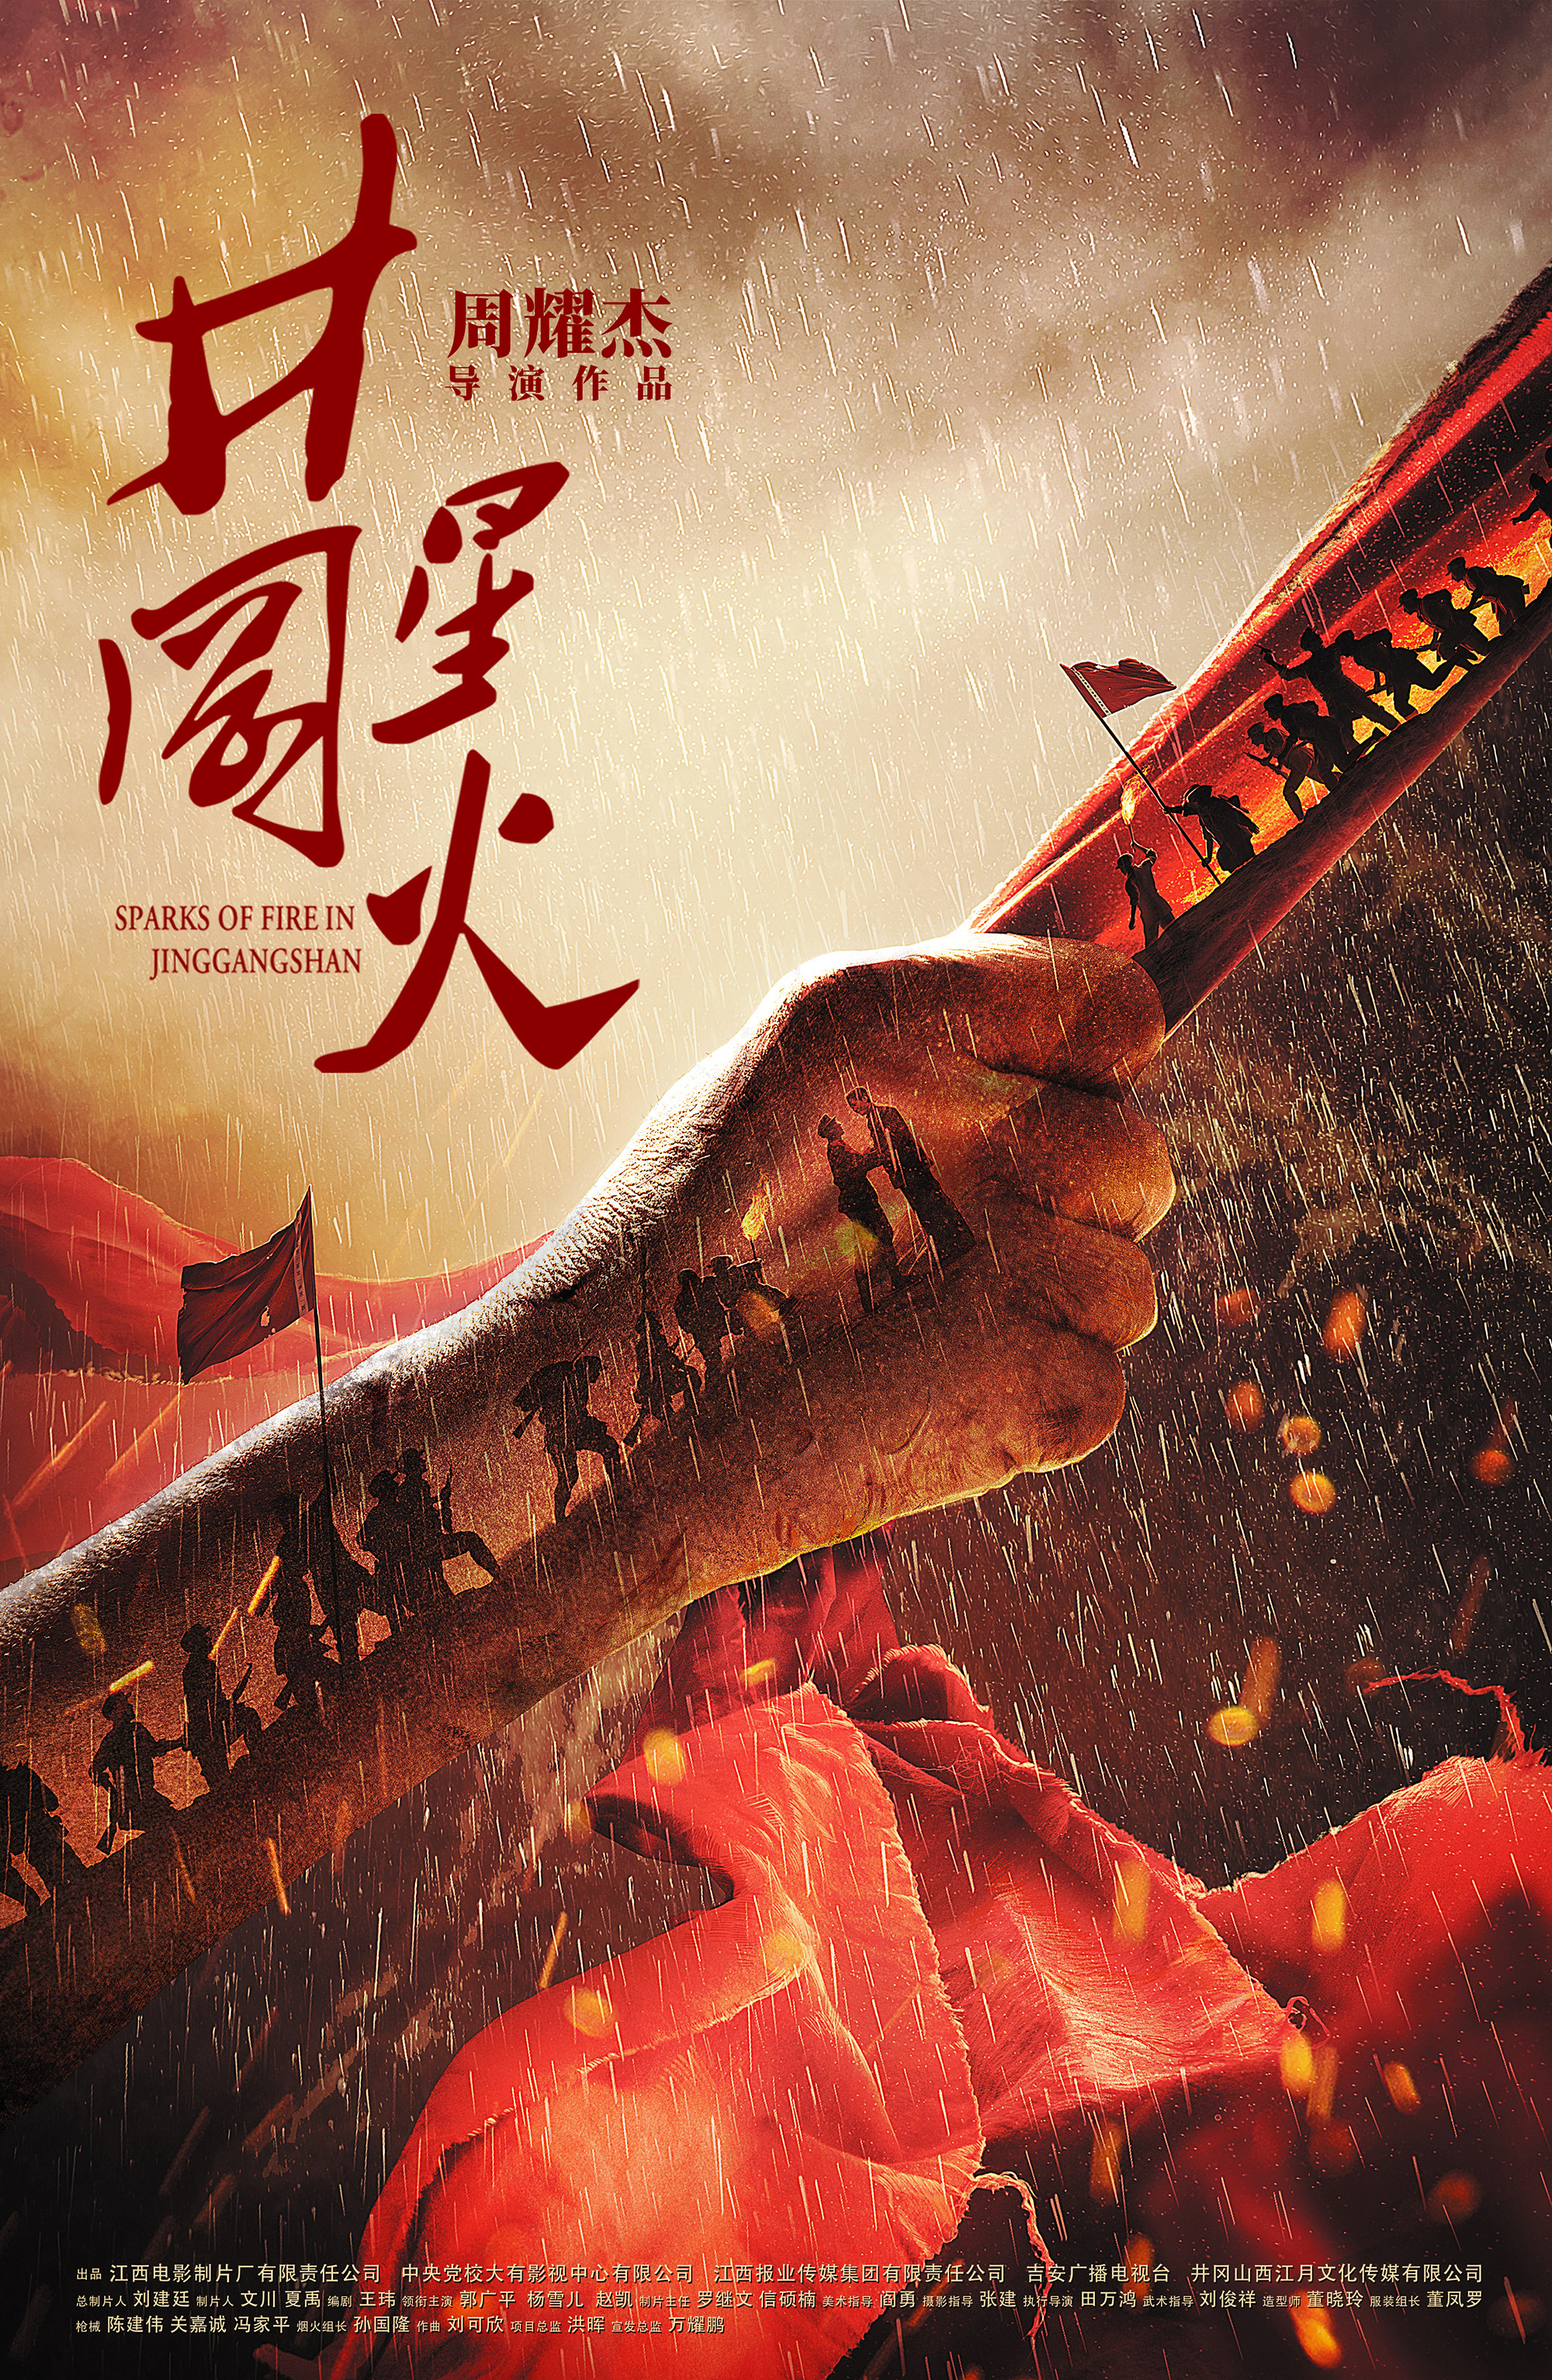 井冈星火 - Sparks of Fire in Jinggangshan